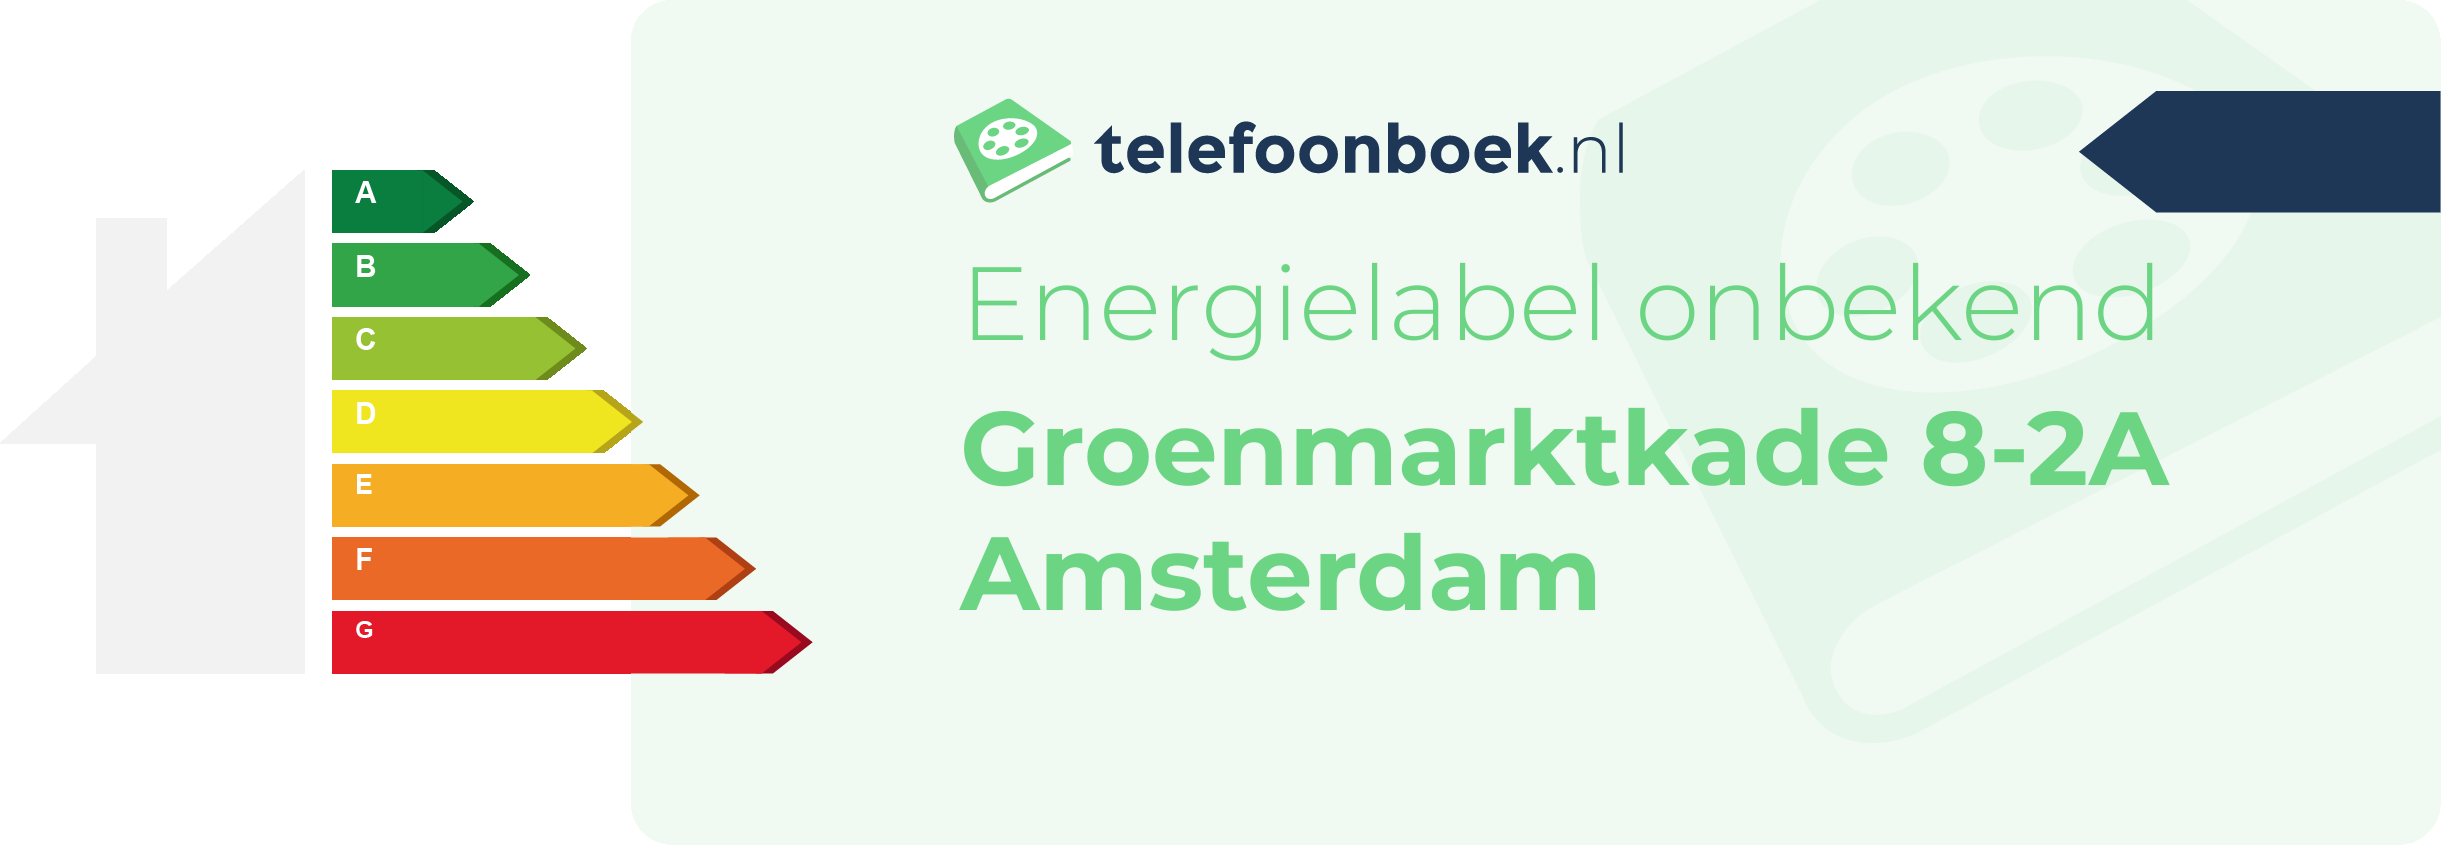 Energielabel Groenmarktkade 8-2A Amsterdam